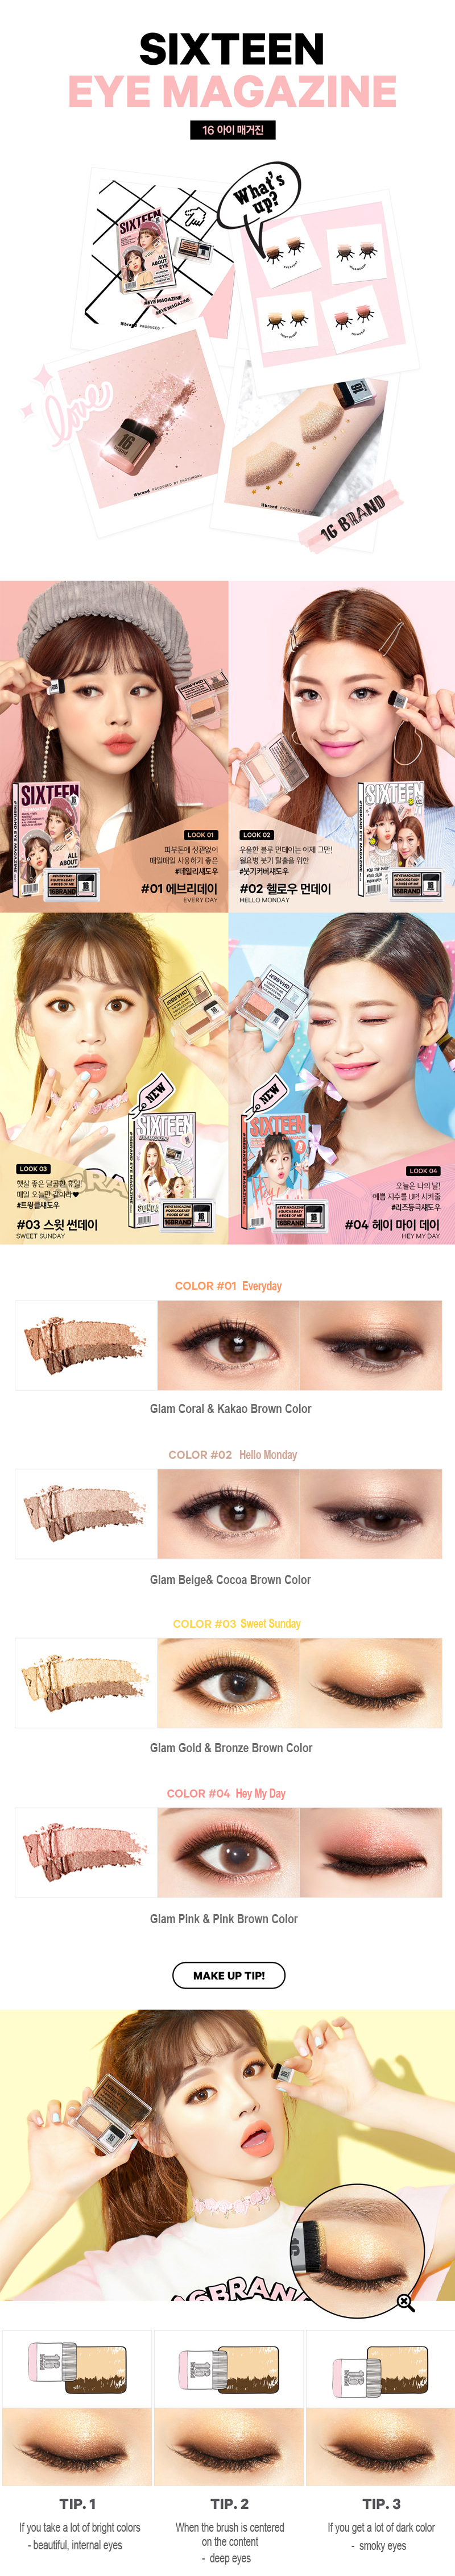 à¸à¸¥à¸à¸²à¸£à¸à¹à¸à¸«à¸²à¸£à¸¹à¸à¸�à¸²à¸à¸ªà¸³à¸«à¸£à¸±à¸ 16 Brand Eye Magazine Eyeshadow